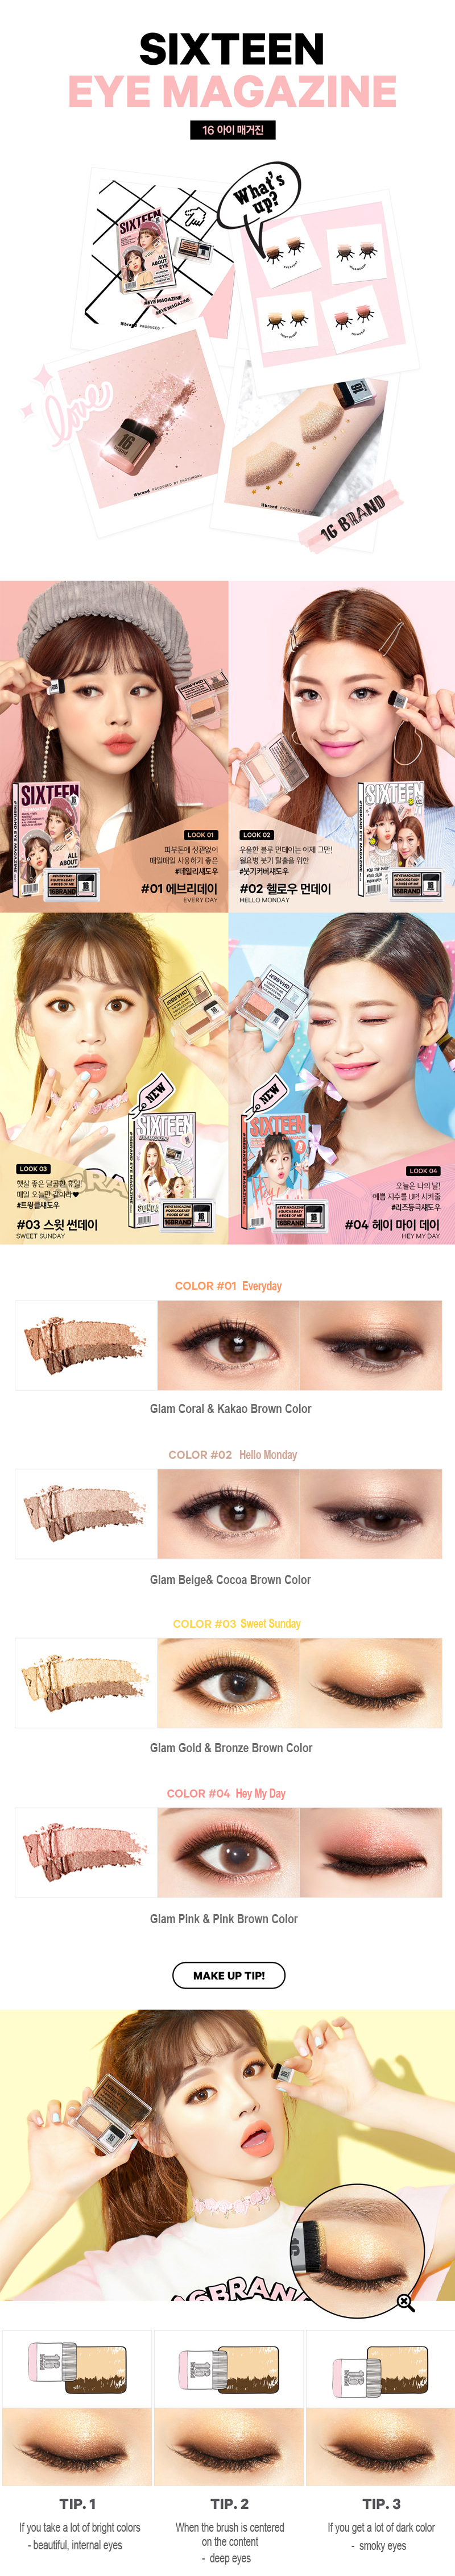 à¸à¸¥à¸à¸²à¸£à¸à¹à¸à¸«à¸²à¸£à¸¹à¸à¸�à¸²à¸à¸ªà¸³à¸«à¸£à¸±à¸ 16 Brand Eye Magazine Eyeshadow